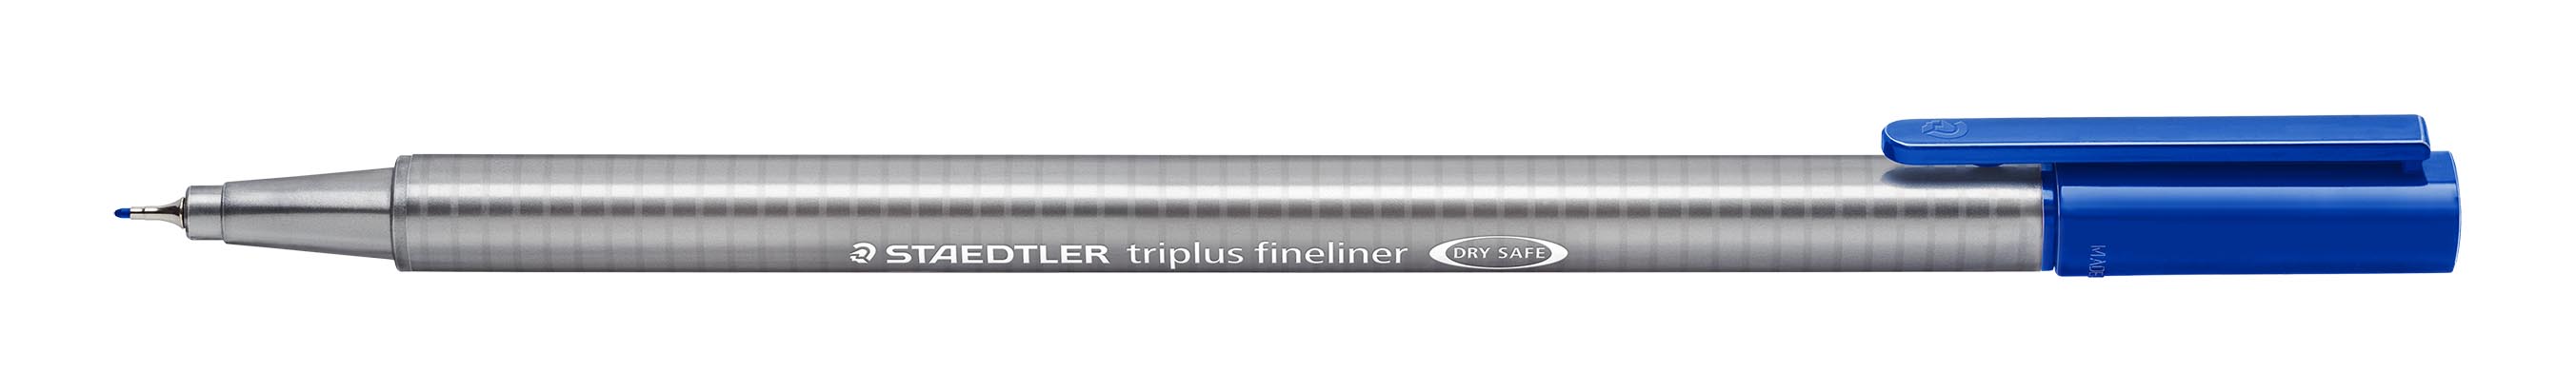 Fineliner Triplus 0,3mm bl, Staedtler 334-3, 10stk